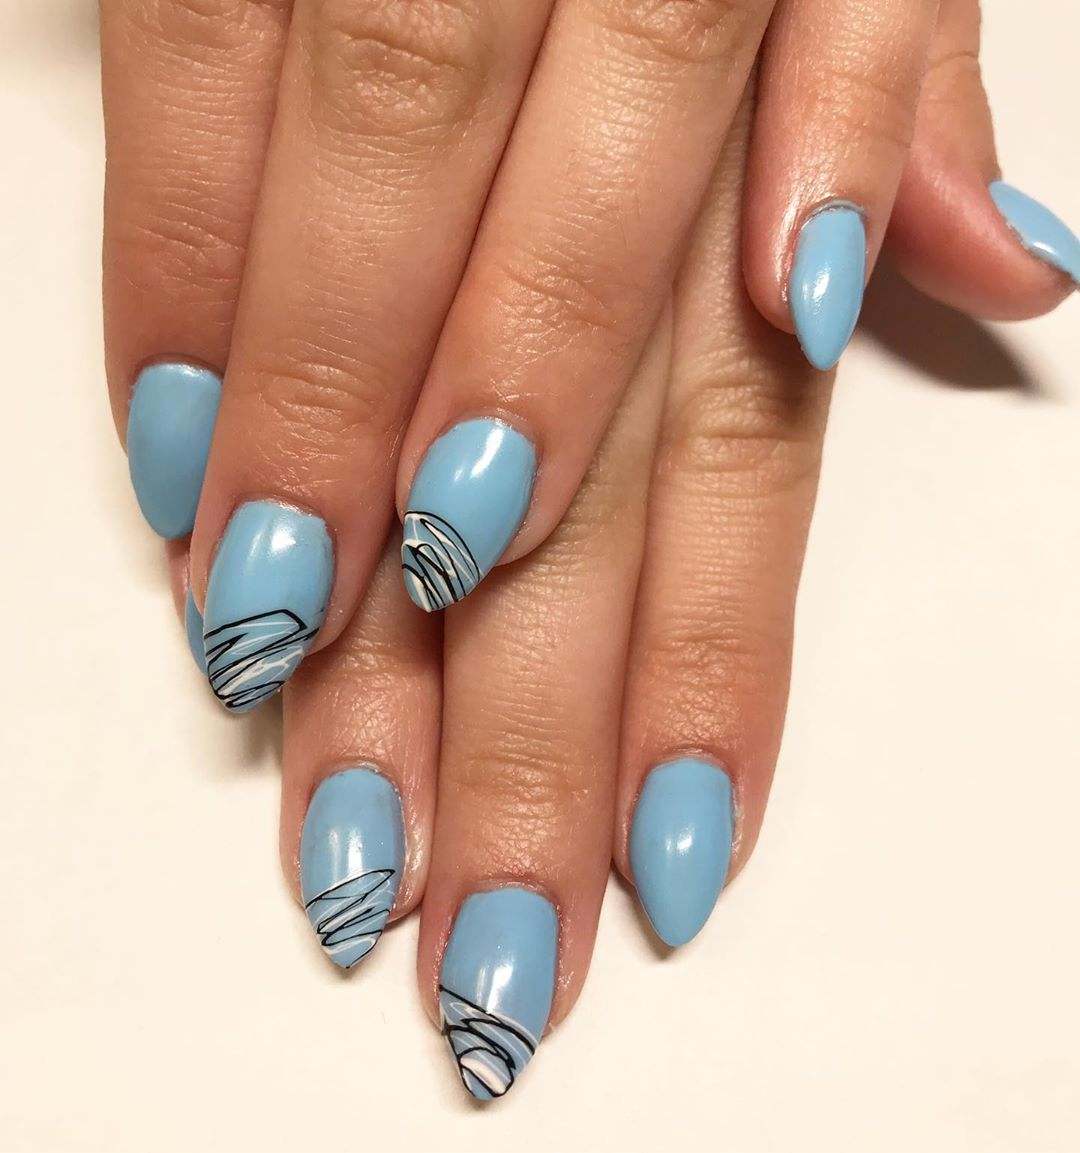 Spider gel naglar långa stilett naglar från ljusblå nagellack modetrender sommar